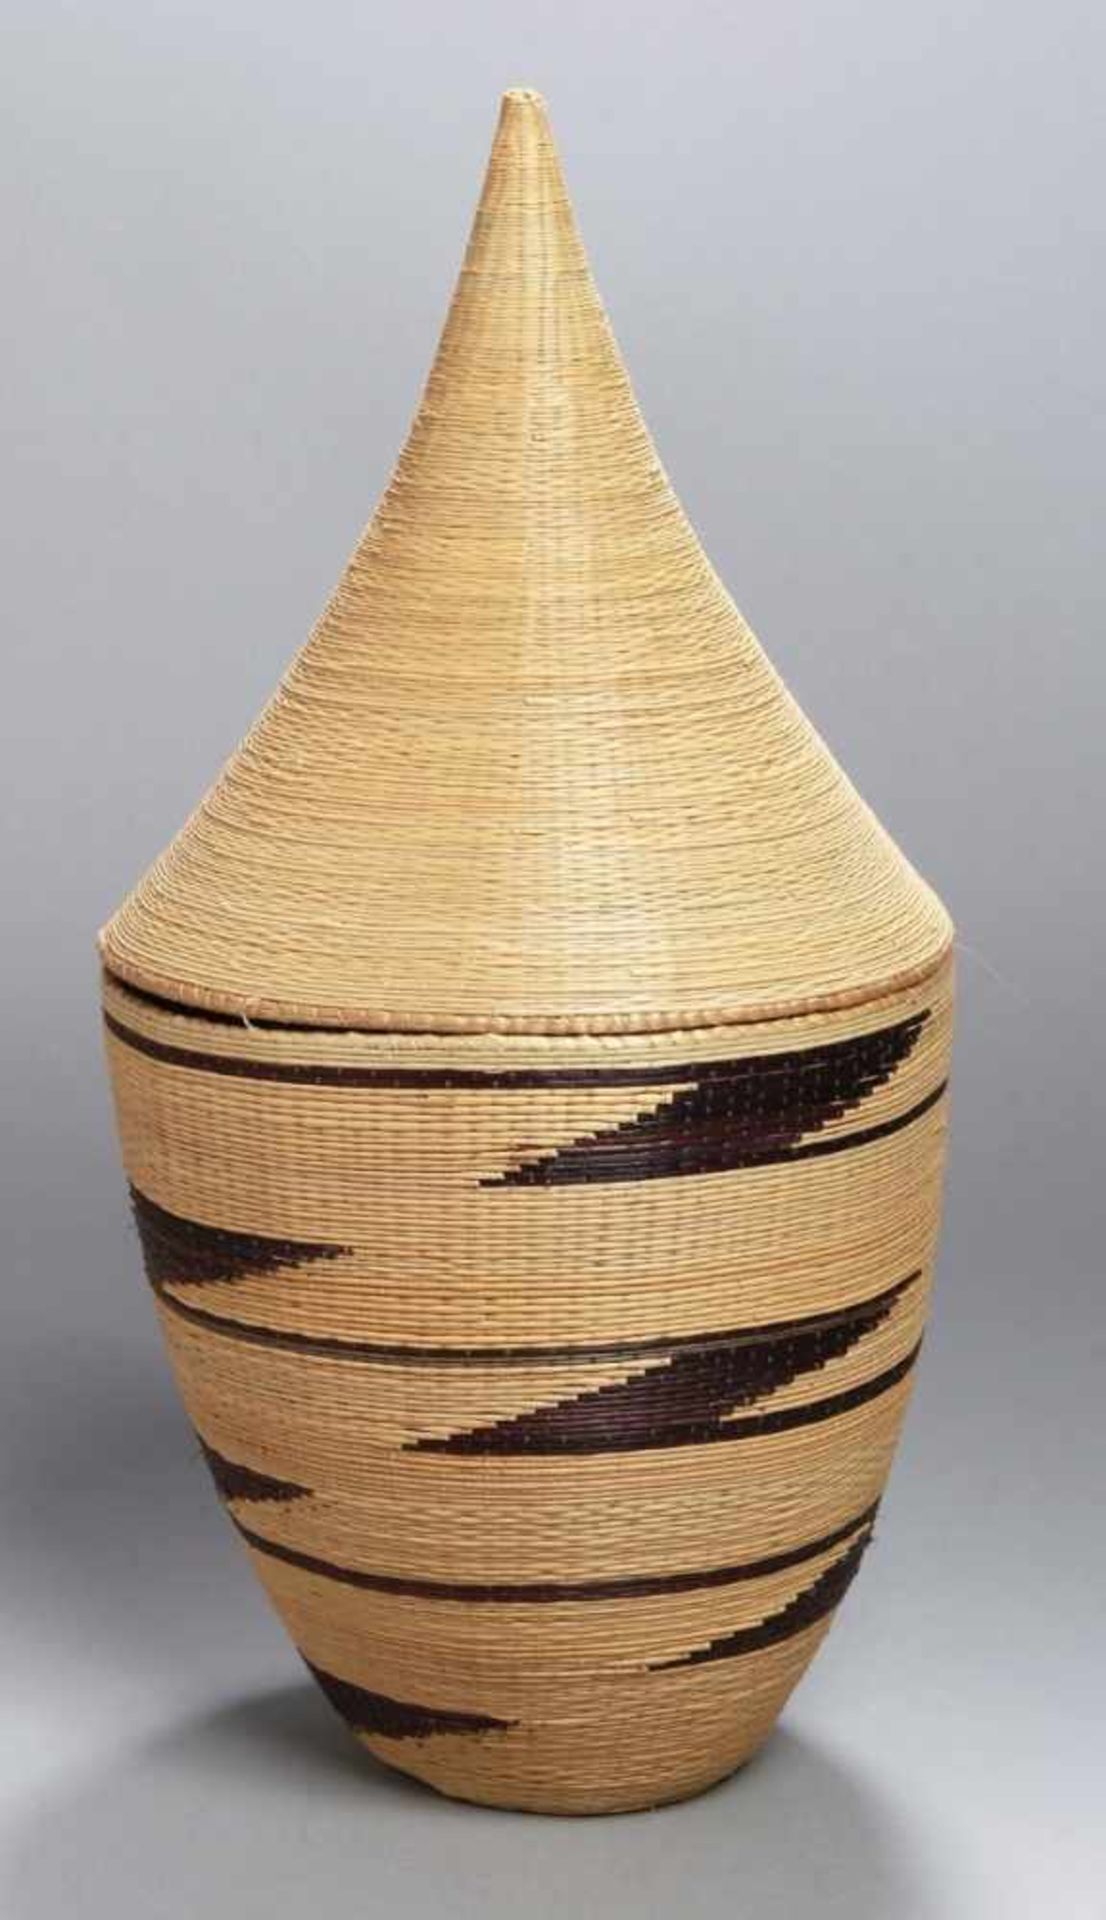 Bast-Deckelkorb, Tutsi, Ruanda, schöne, feine Handarbeit, gefertigt aus Bastgewebe inbeige,